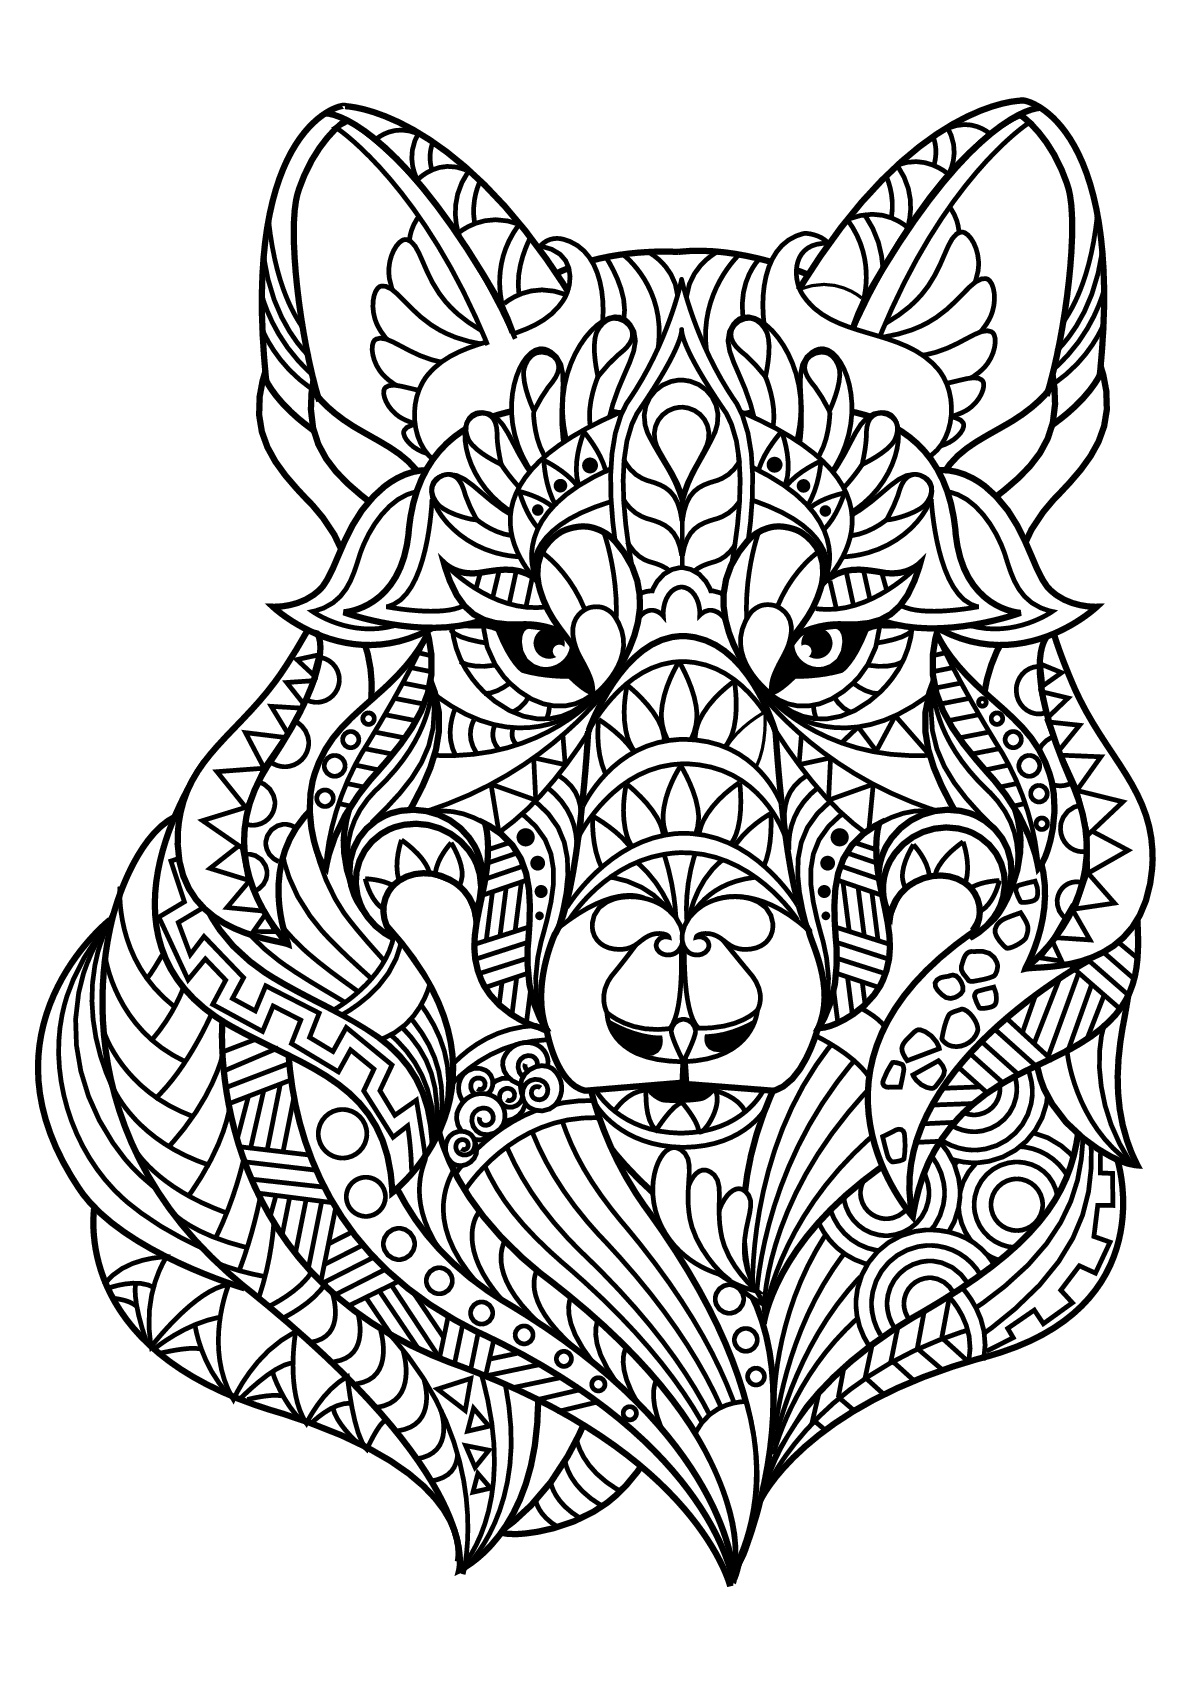 10 Coloriage De Loup Mandala | Imprimer et Obtenir une Coloriage Gratuit Ici